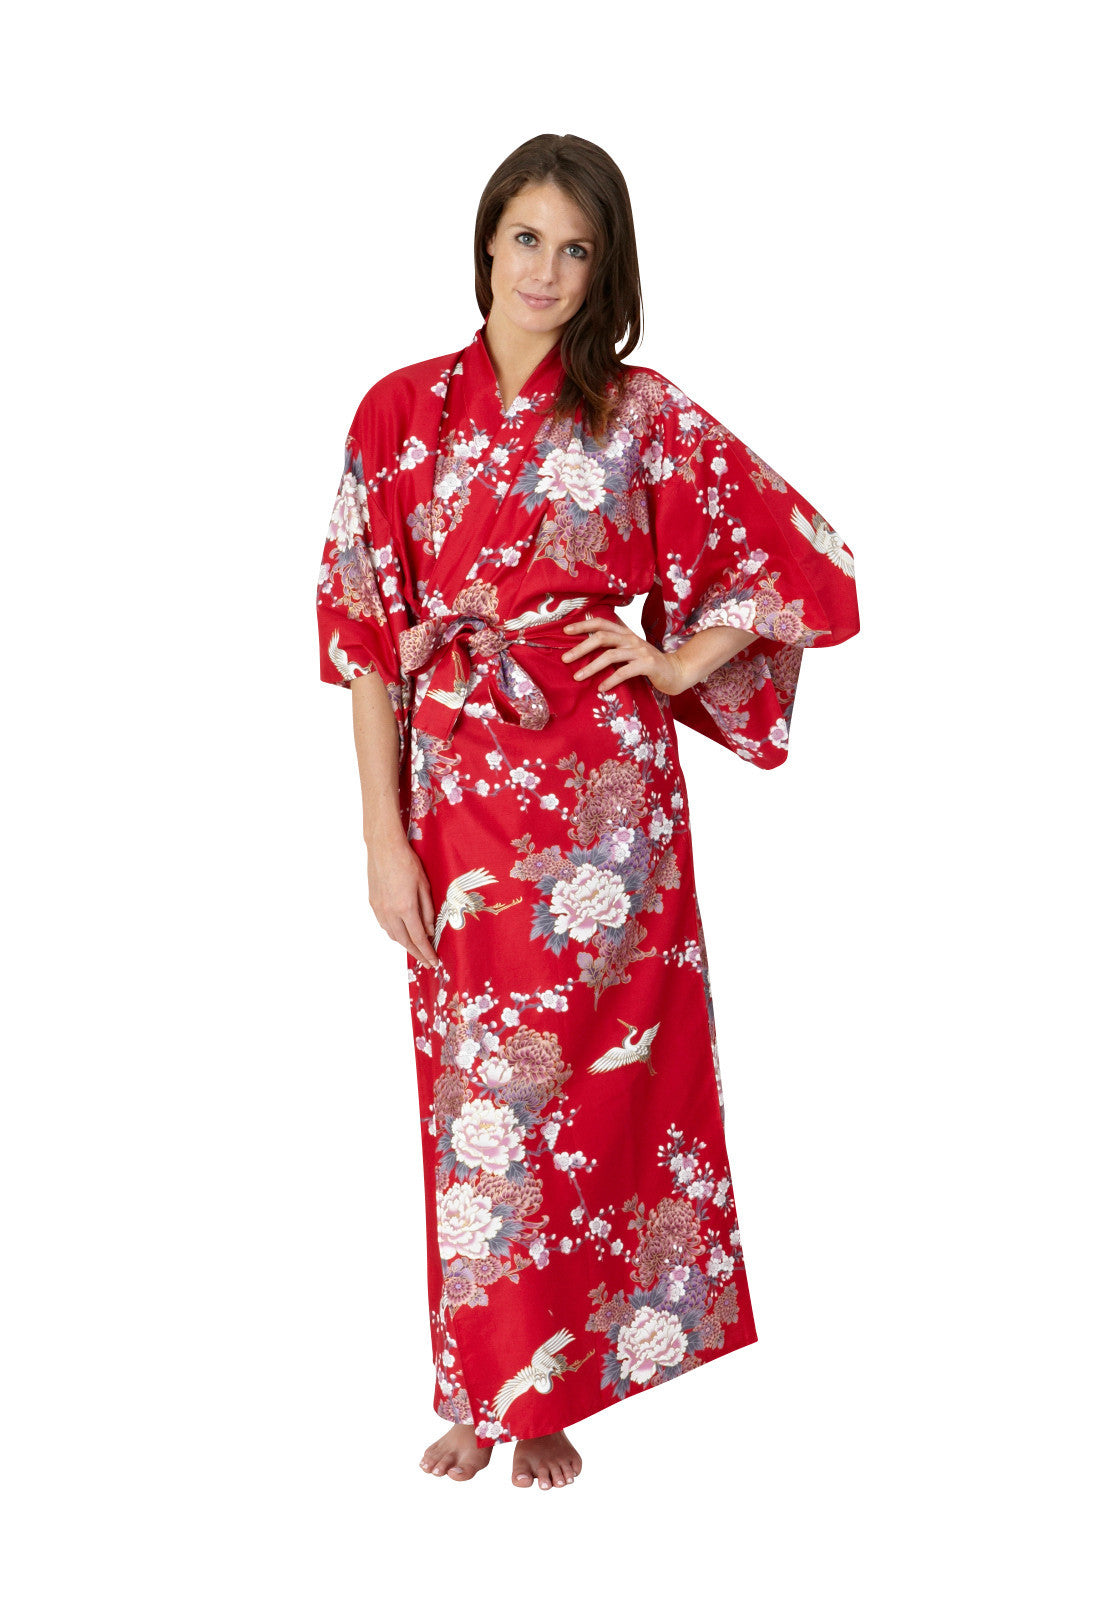 Japanese Blue Vintage Kimono Yukata Gown Floral Robe Haori Geisha Dress  with Obi | eBay